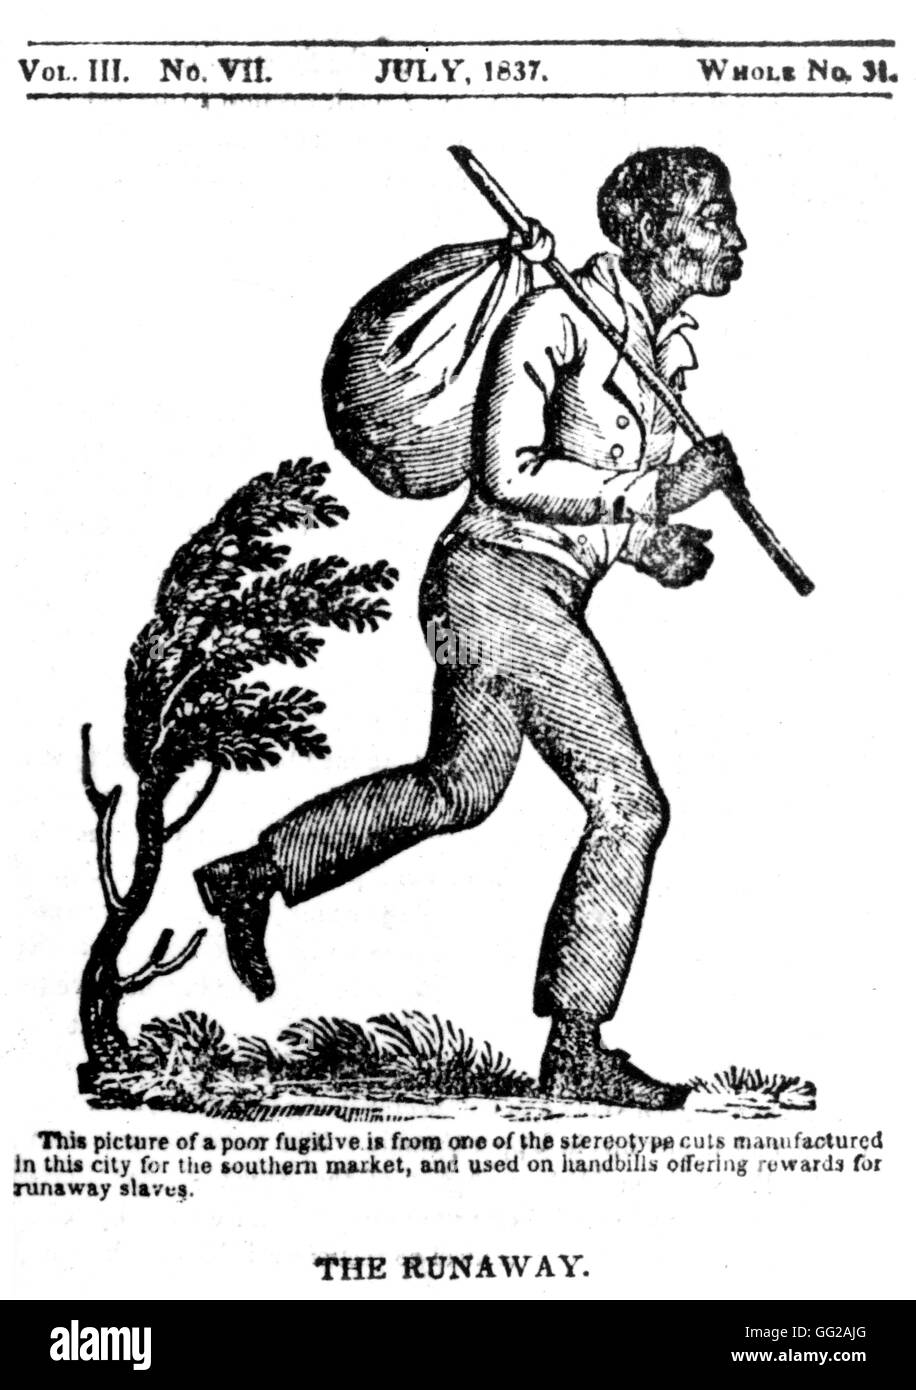 Il Runaway. Incisione su legno usato su da locandine che offre ricompense a coloro che hanno trovato Fugitive Slave 1837 Stati Uniti Washington. La biblioteca del congresso Foto Stock